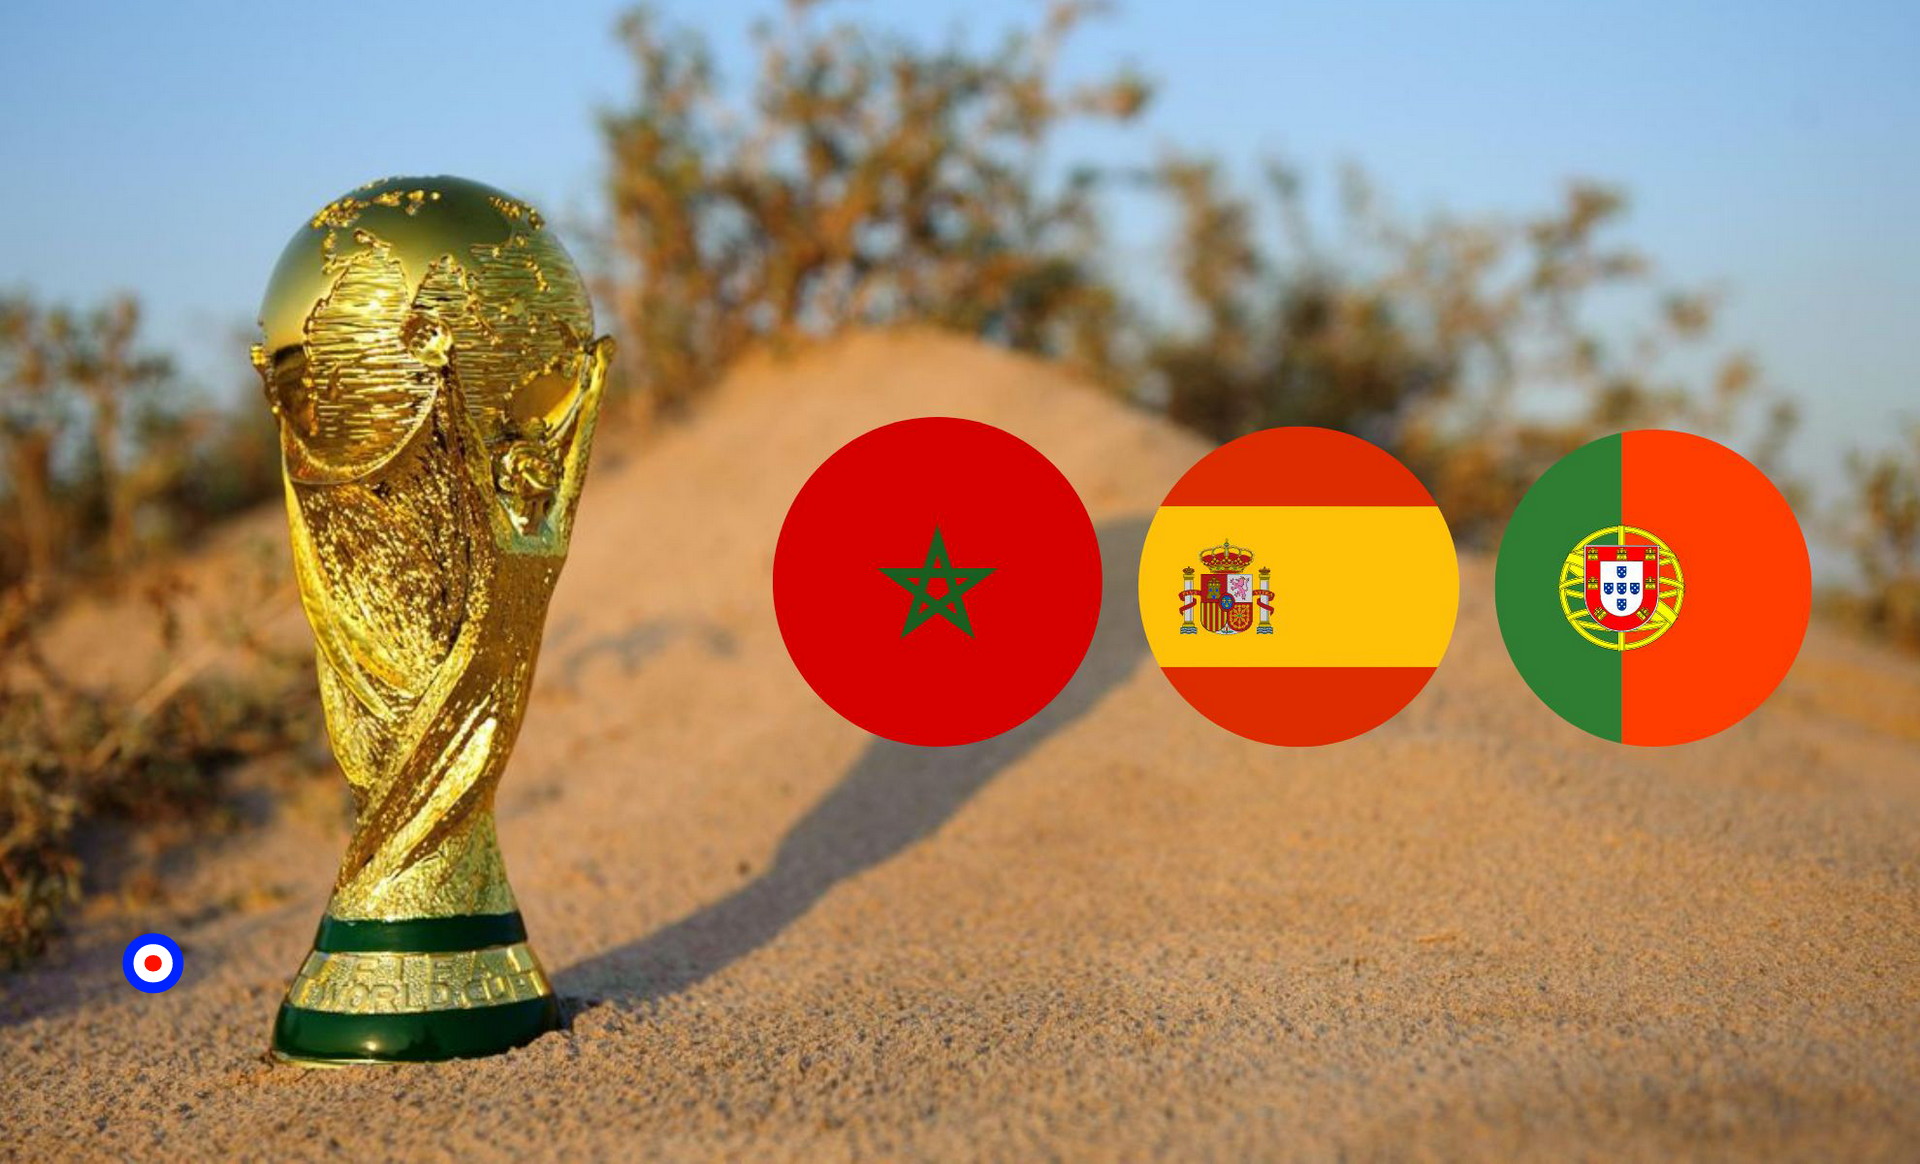 ضربة لكاربانات الجزاير… الاتحاد الافريقي لكرة القدم يدعم رسميا ملف ترشح المغرب لتنظيم المونديال رفقة اسبانيا والبرتغال